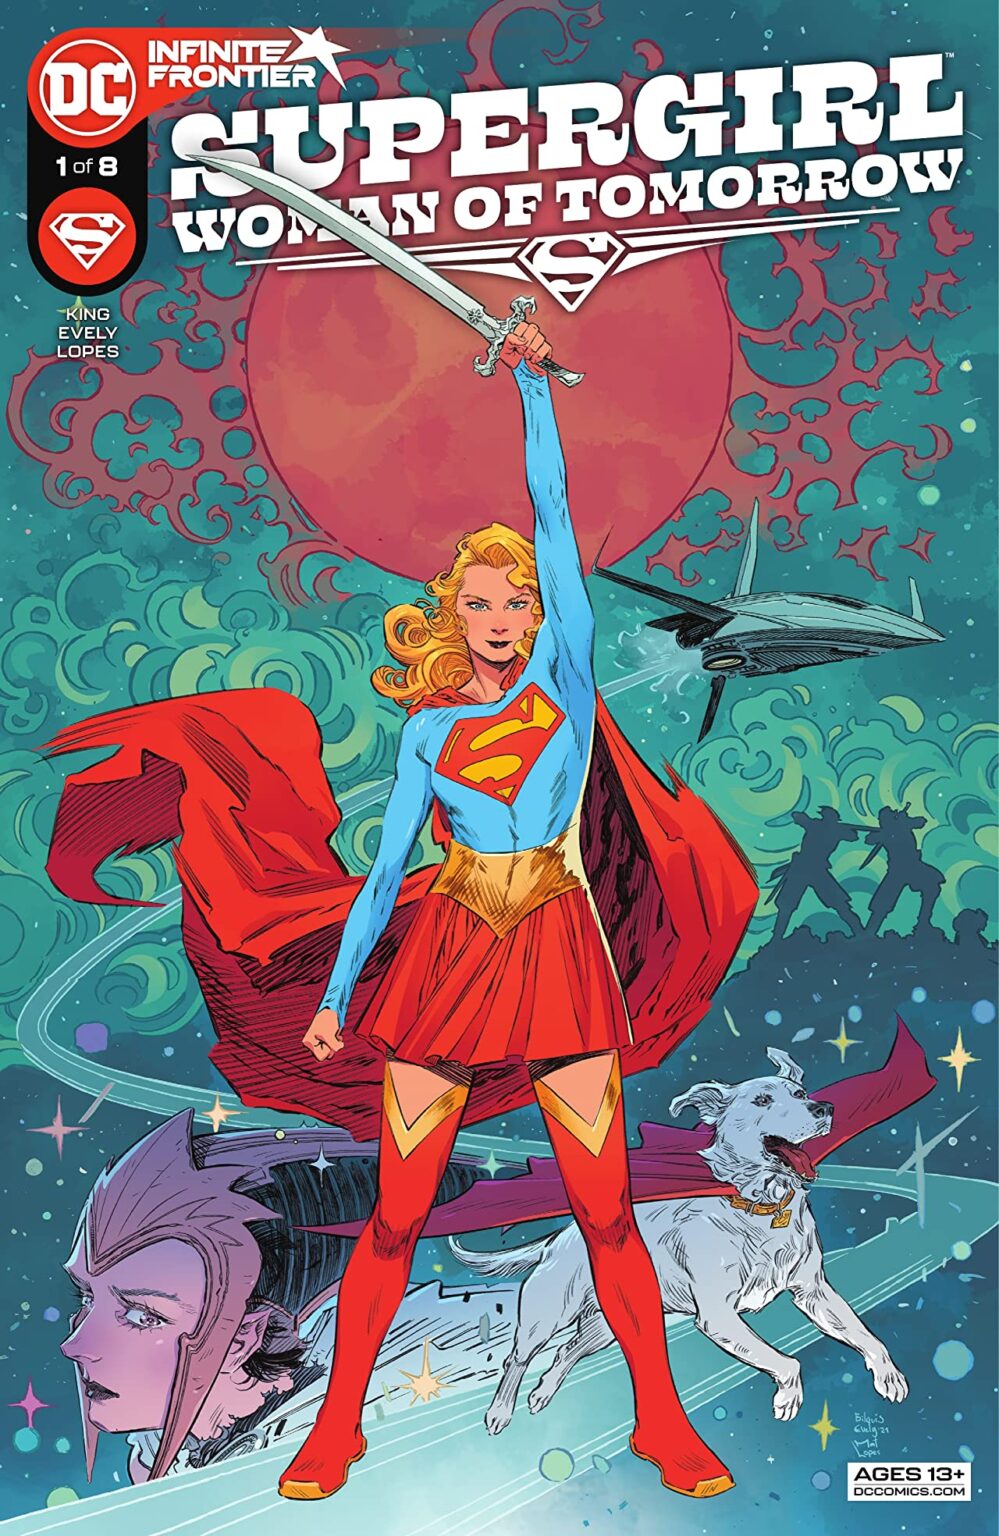 18 - Les comics que vous lisez en ce moment - Page 19 Supergirl-999x1536